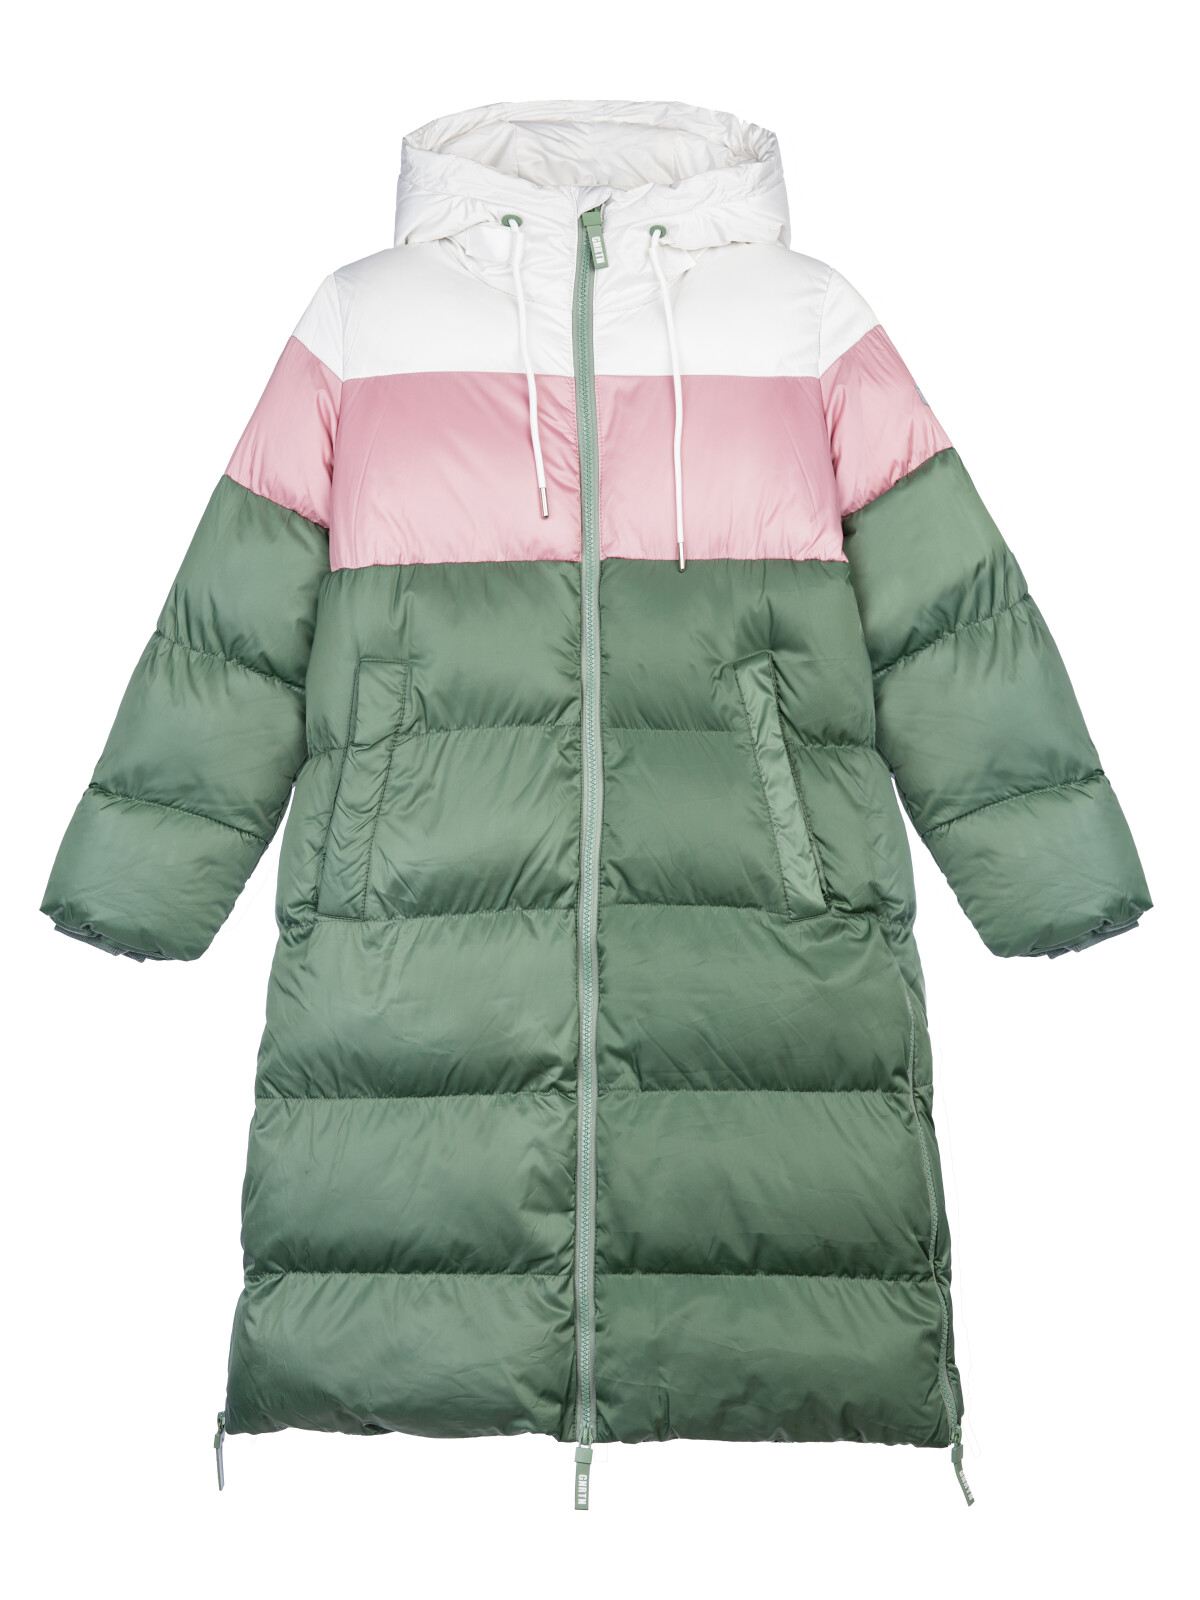 Пальто текстильное для девочек PlayToday, серебро,коричневый,темно-зеленый, 146